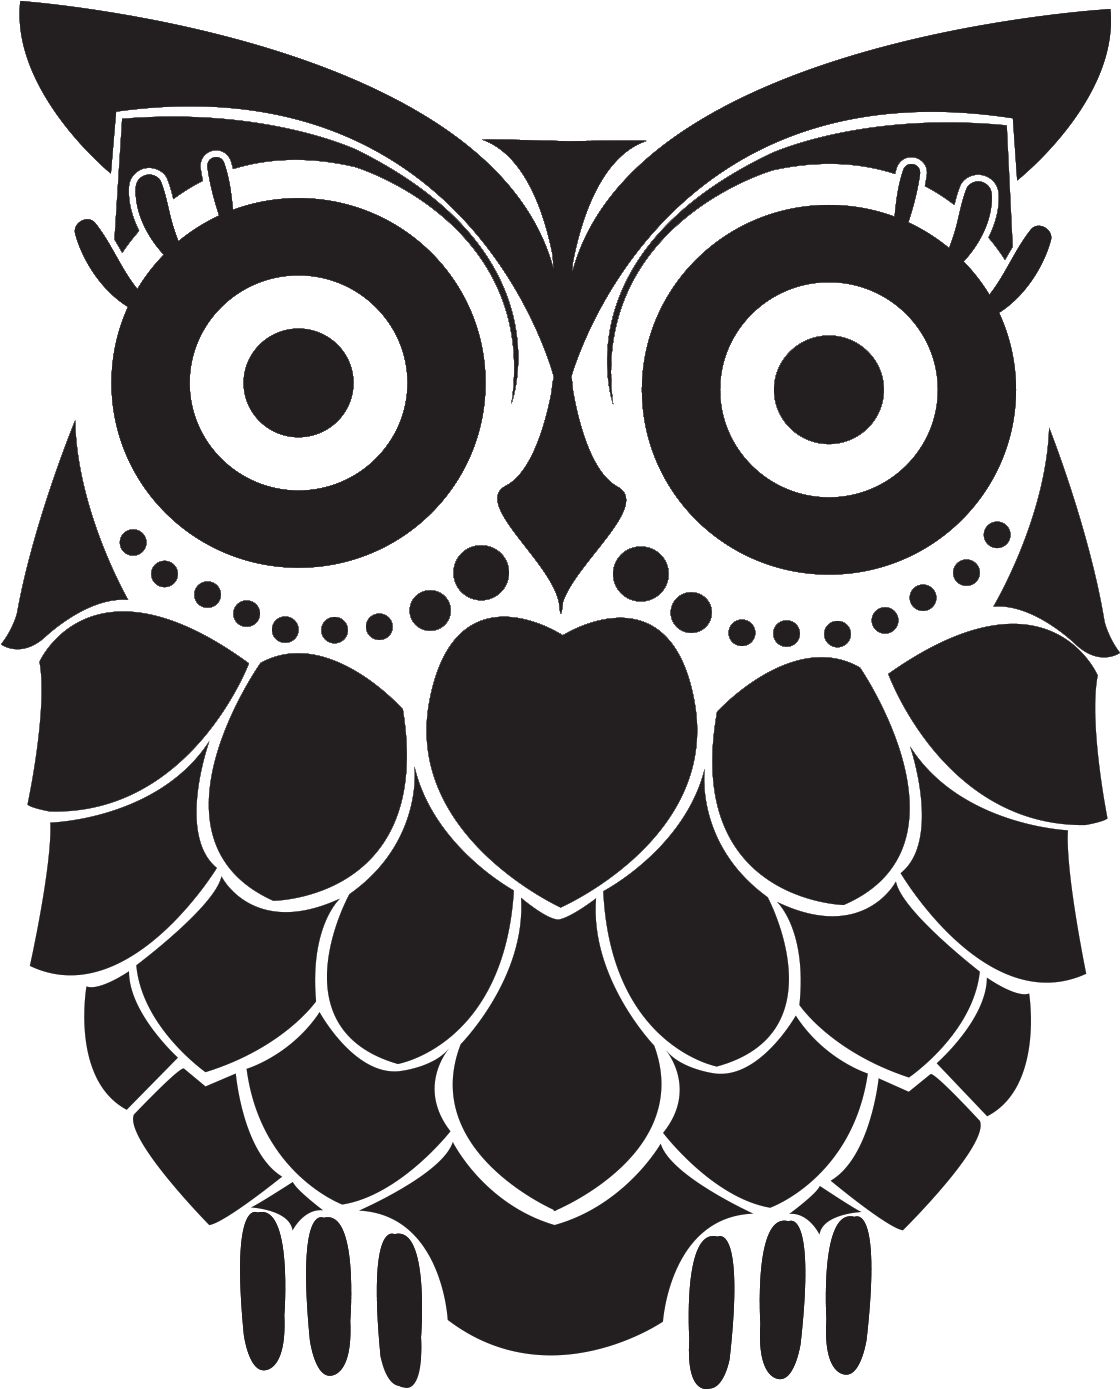 The Trendy Owl - Trendy Owl (1388x1388)